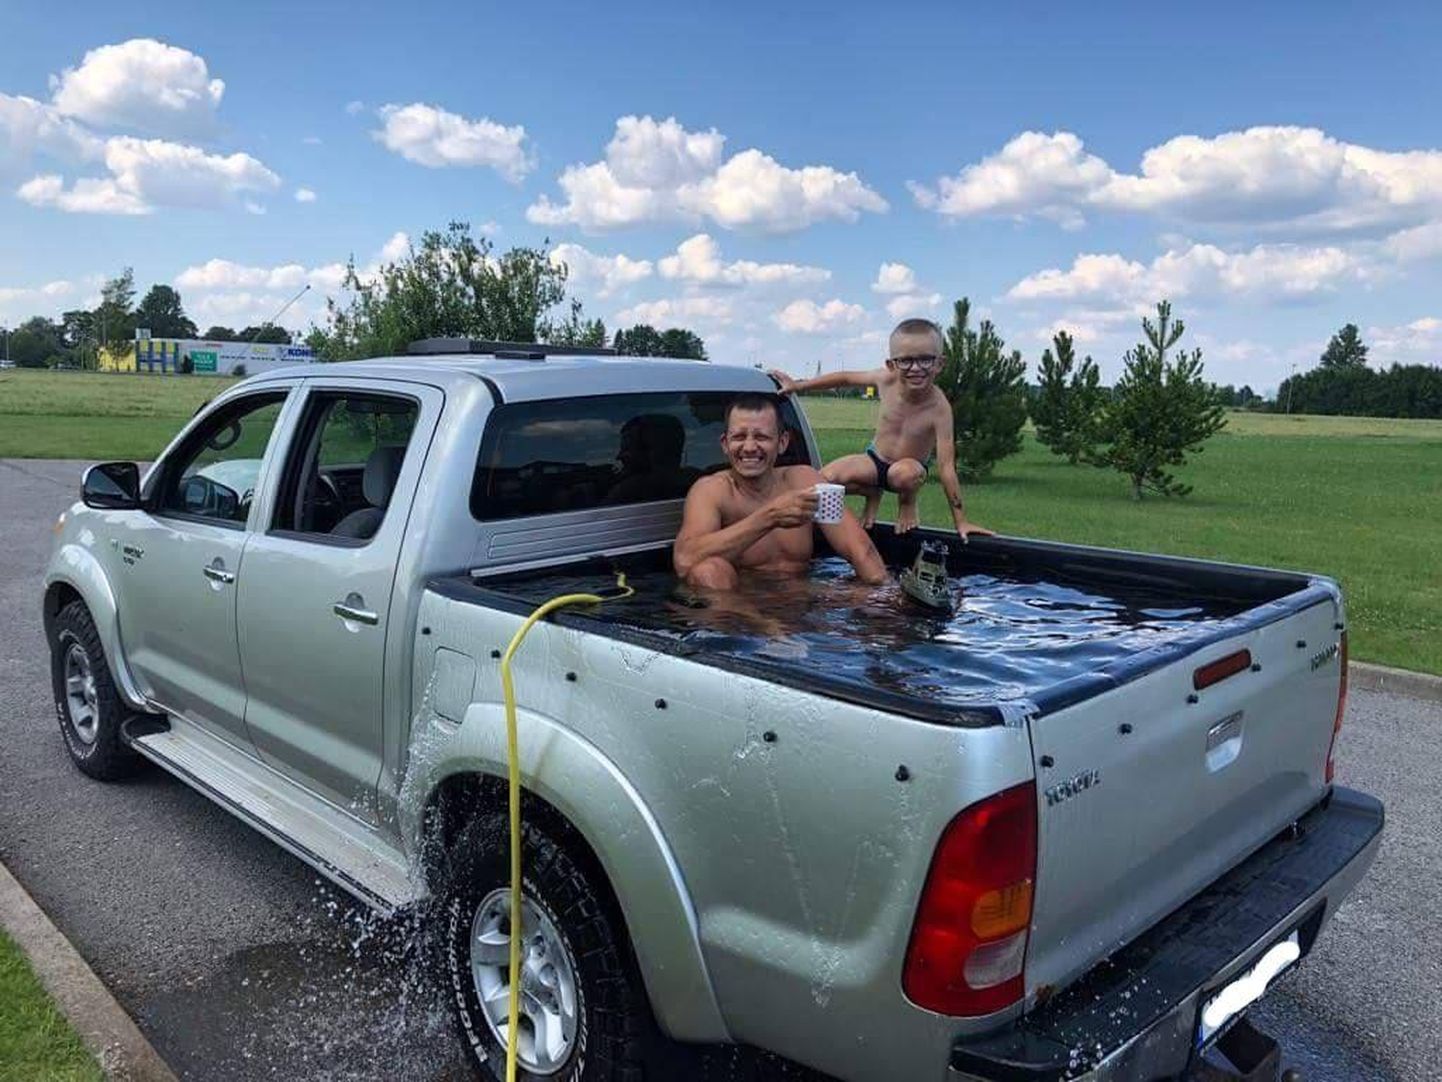 Leidur Diego Sellin jahutab palaval päeval koos lapsega end mobiilses basseinis.